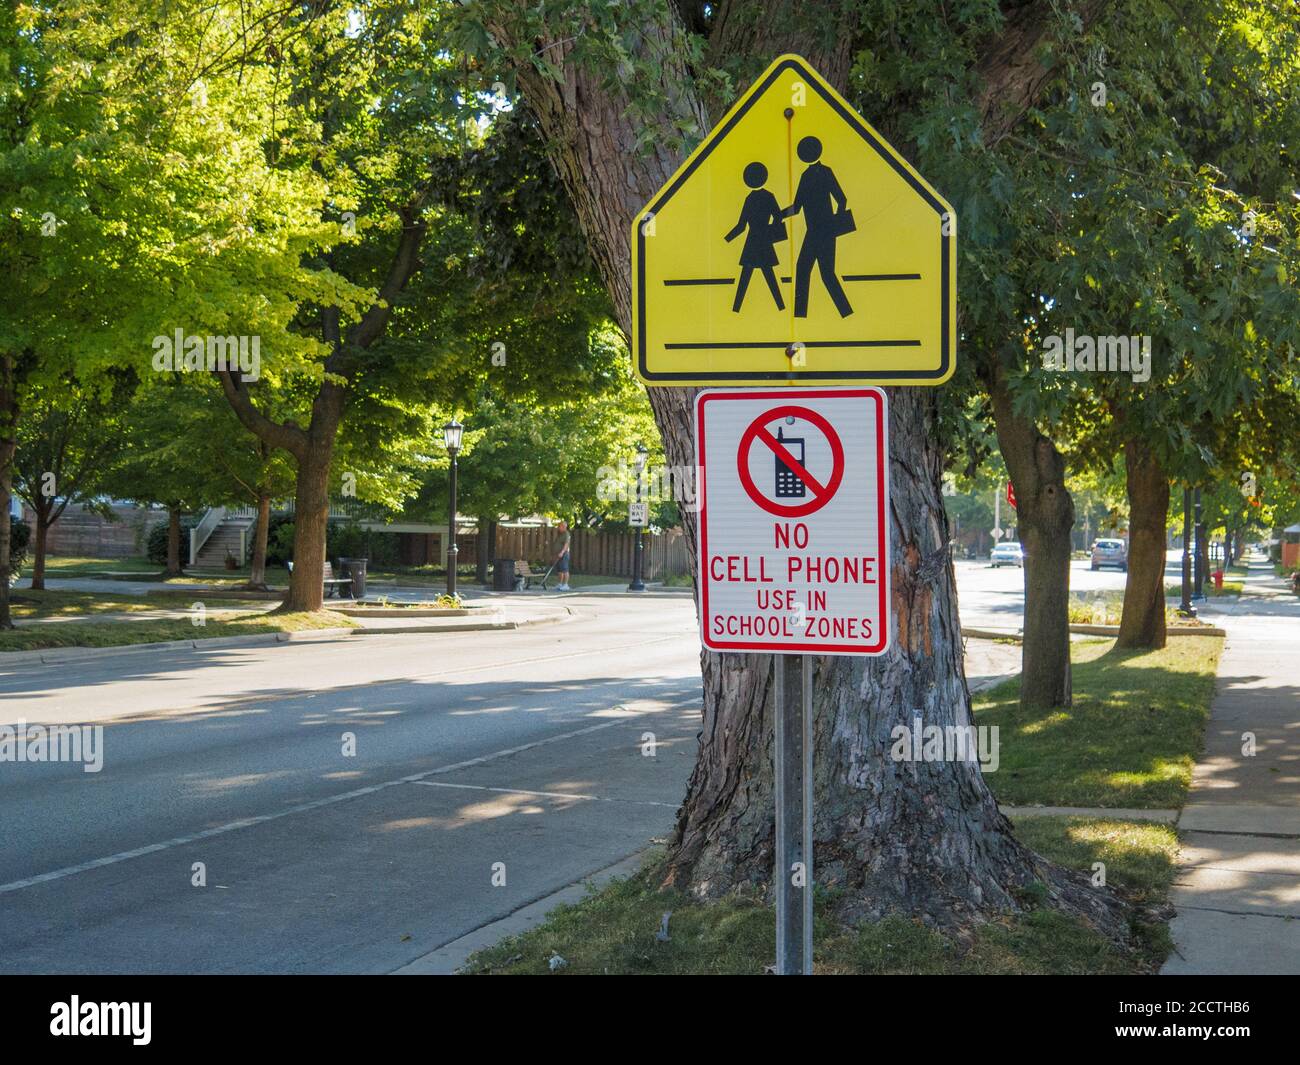 Traversée scolaire et pas d'utilisation de pone cellulaire dans les panneaux routiers de la zone scolaire. Forest Park, Illinois. Banque D'Images